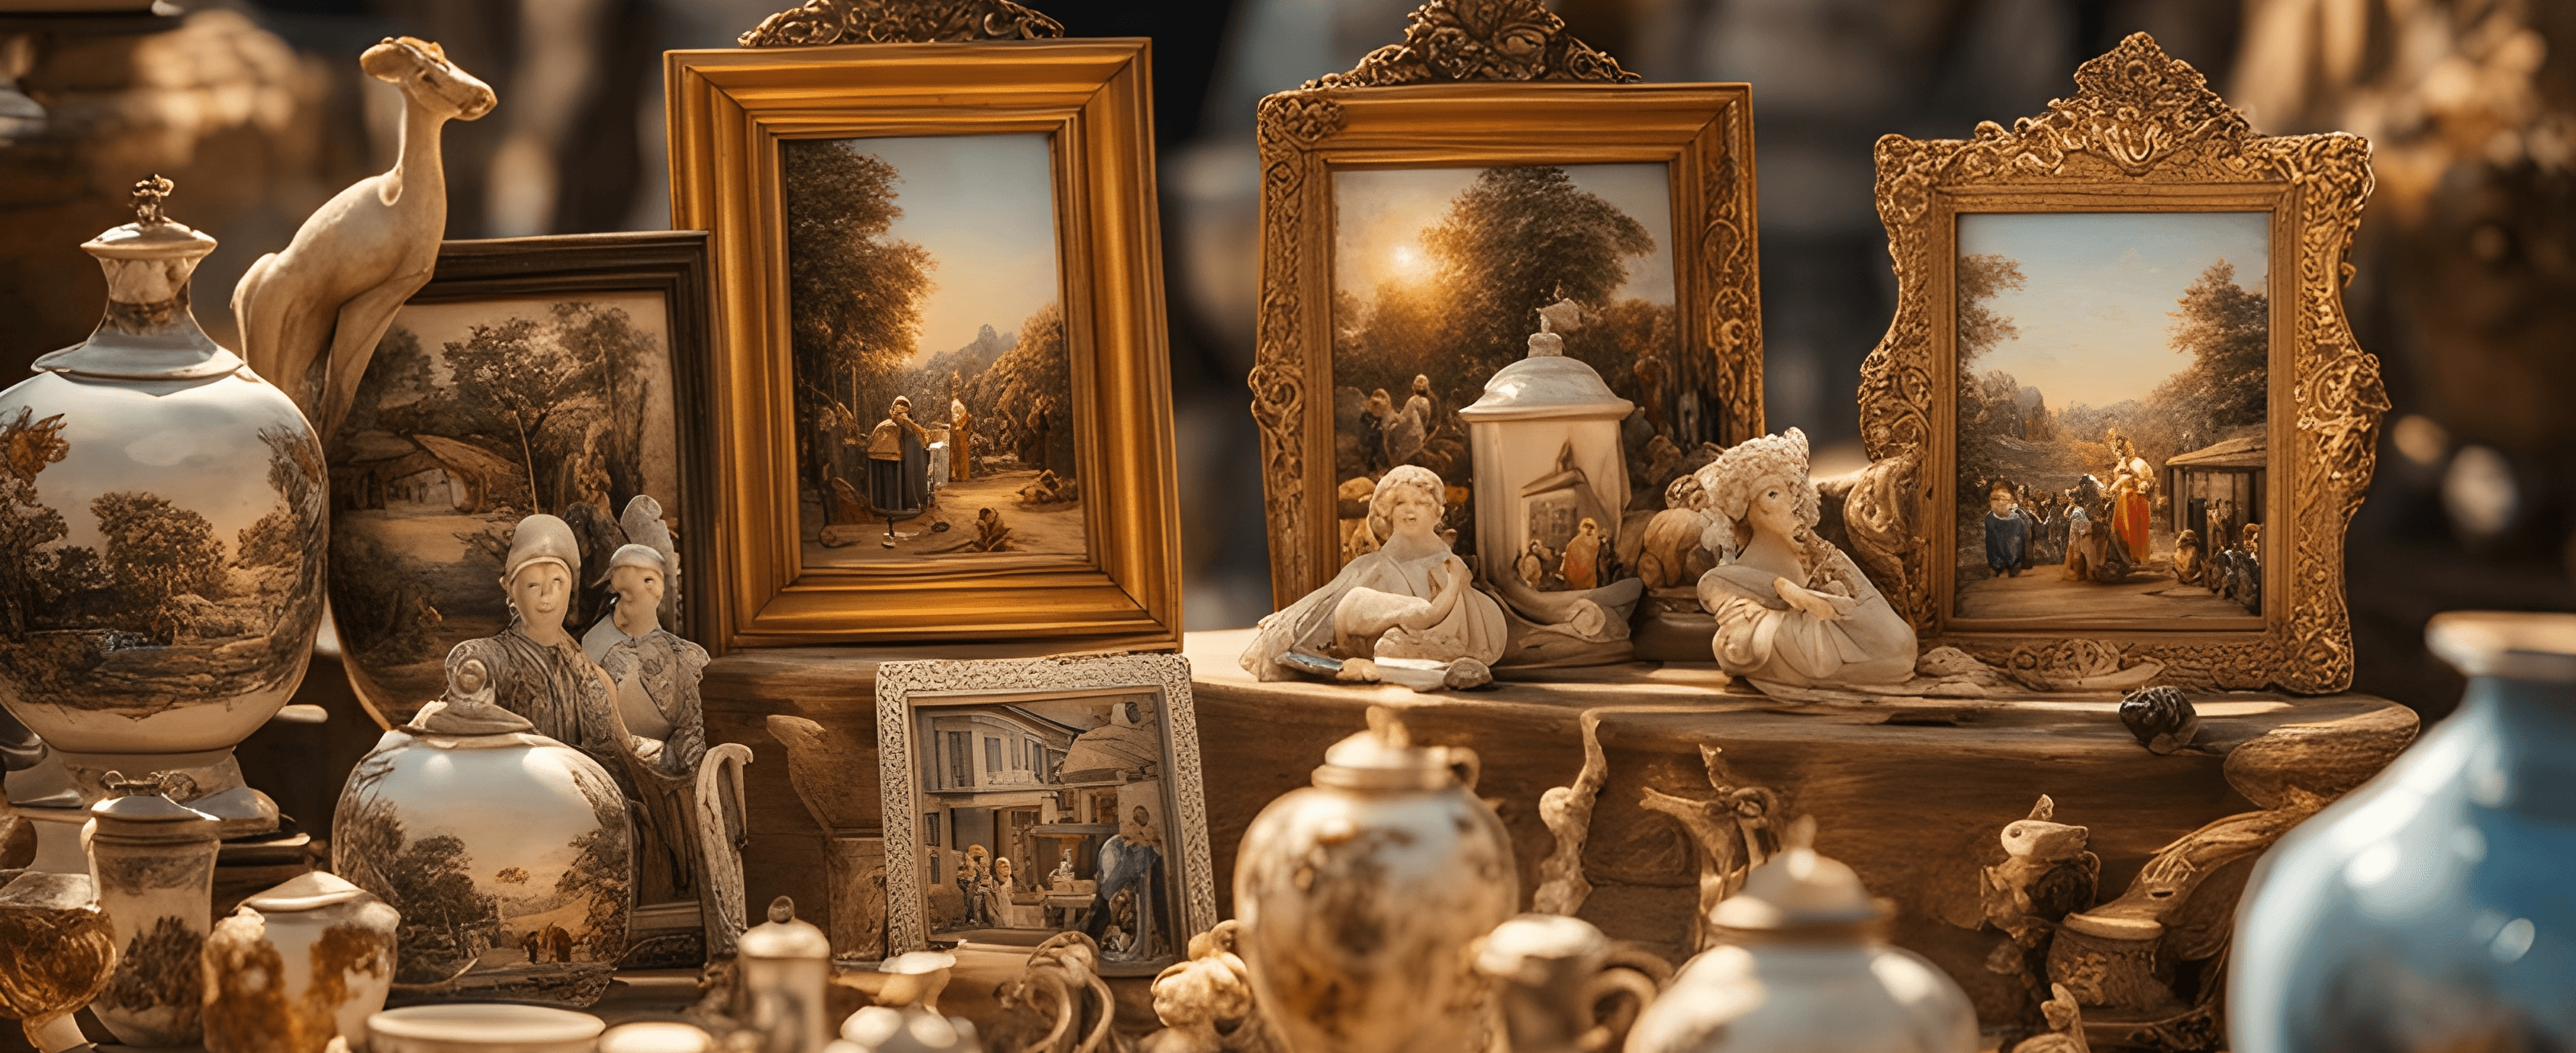 Exquisite Antiquitäten: Antike Vasen, handgemalte Bilder präsentiert in eleganten Sammlerrahmen neben kunstvollen Figuren aus weißem Stein.